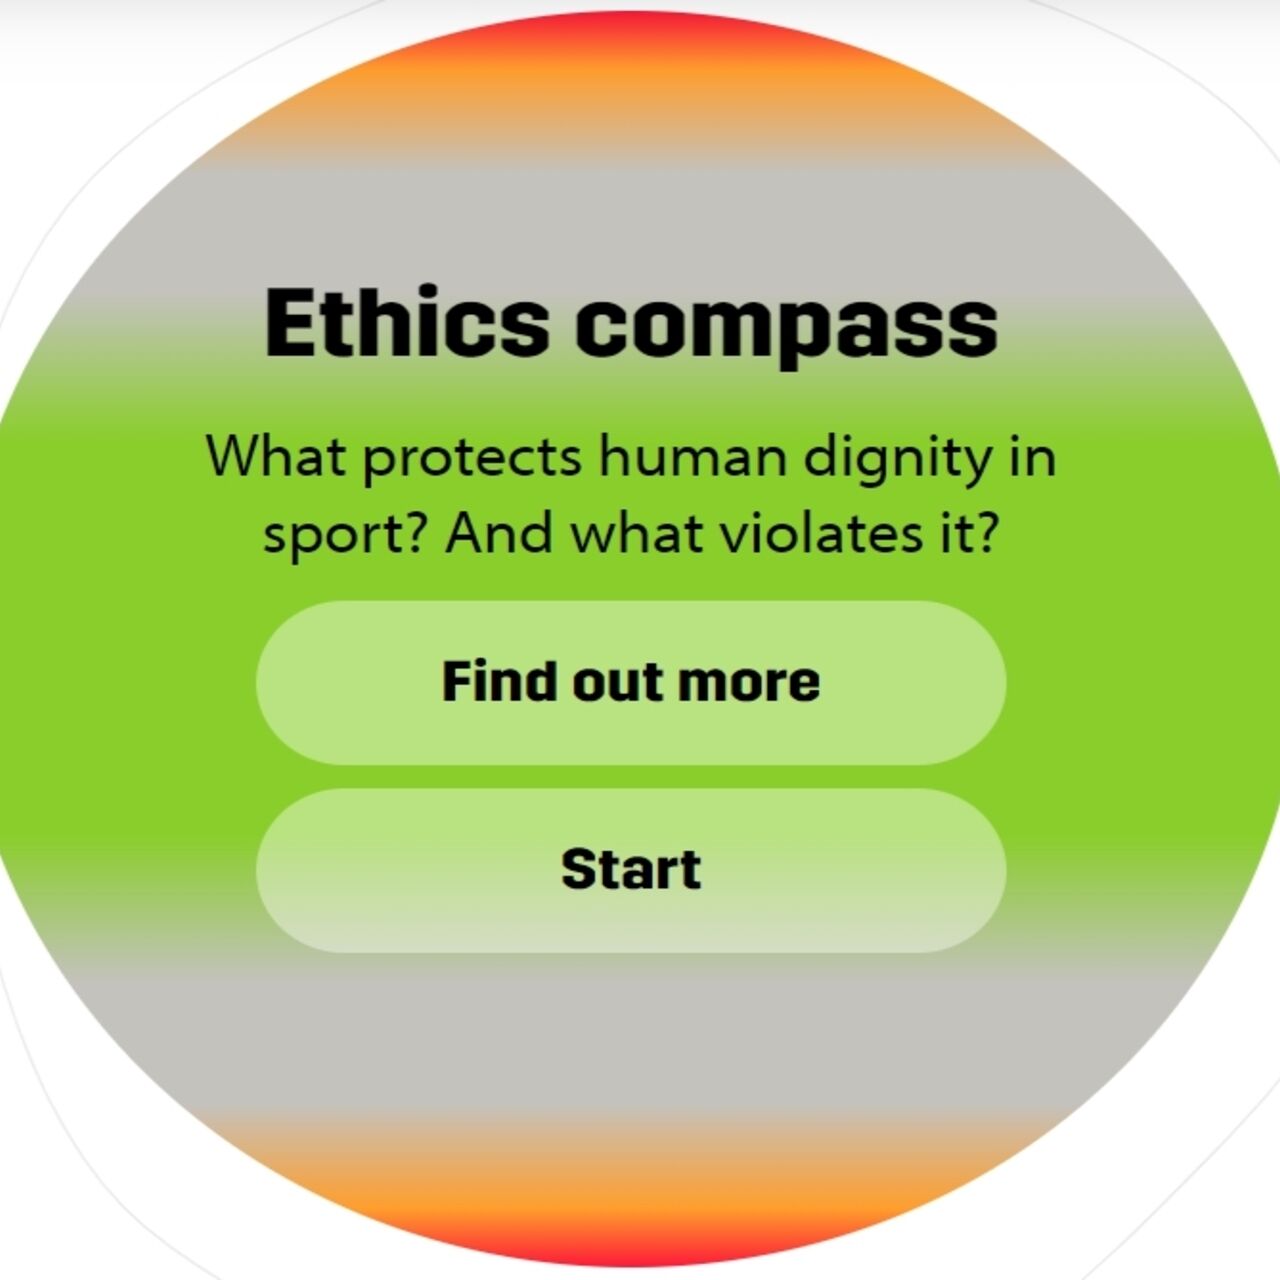 Den digitala etiska kompassen är en hörnsten i projektet